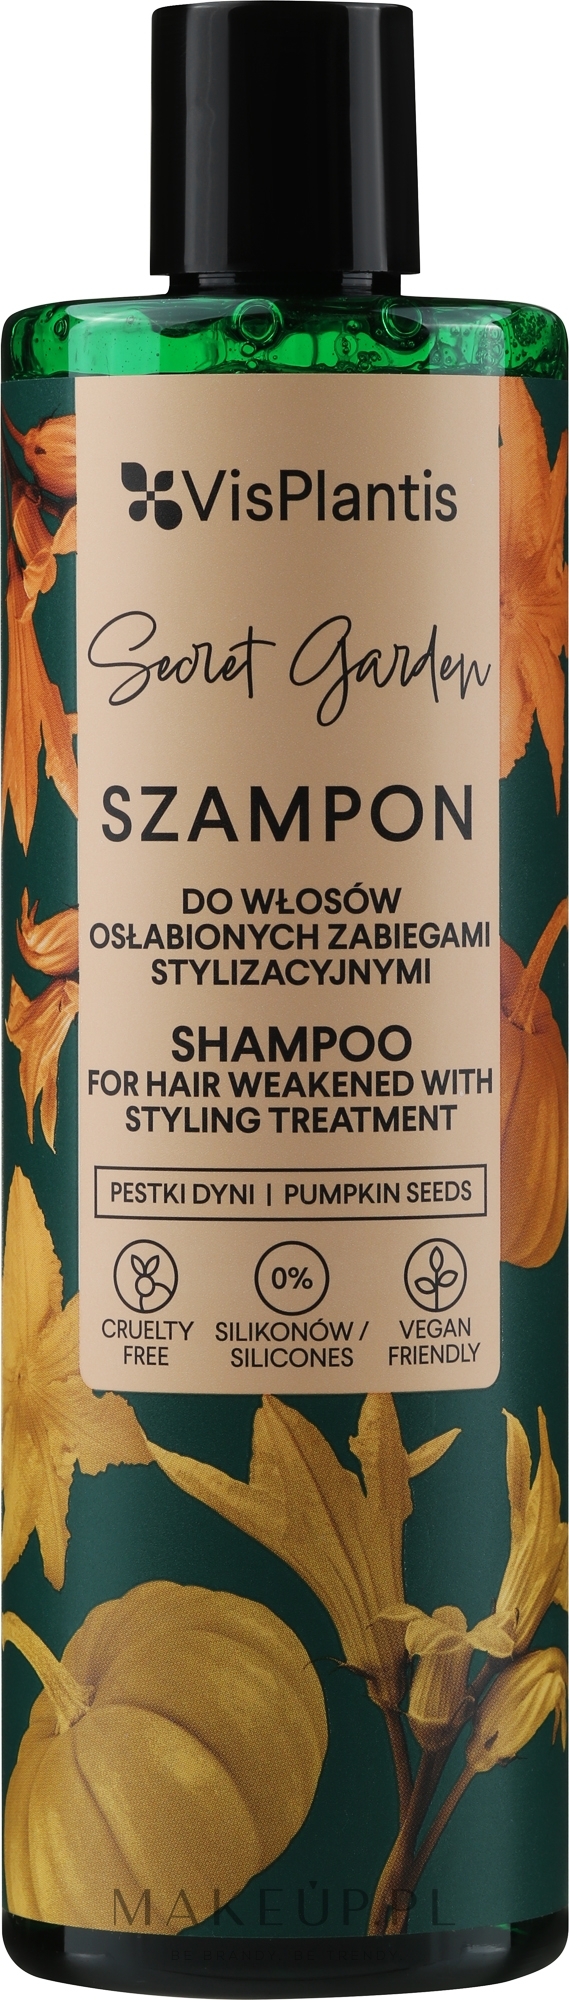 is plantis szampon do włosów wizaz